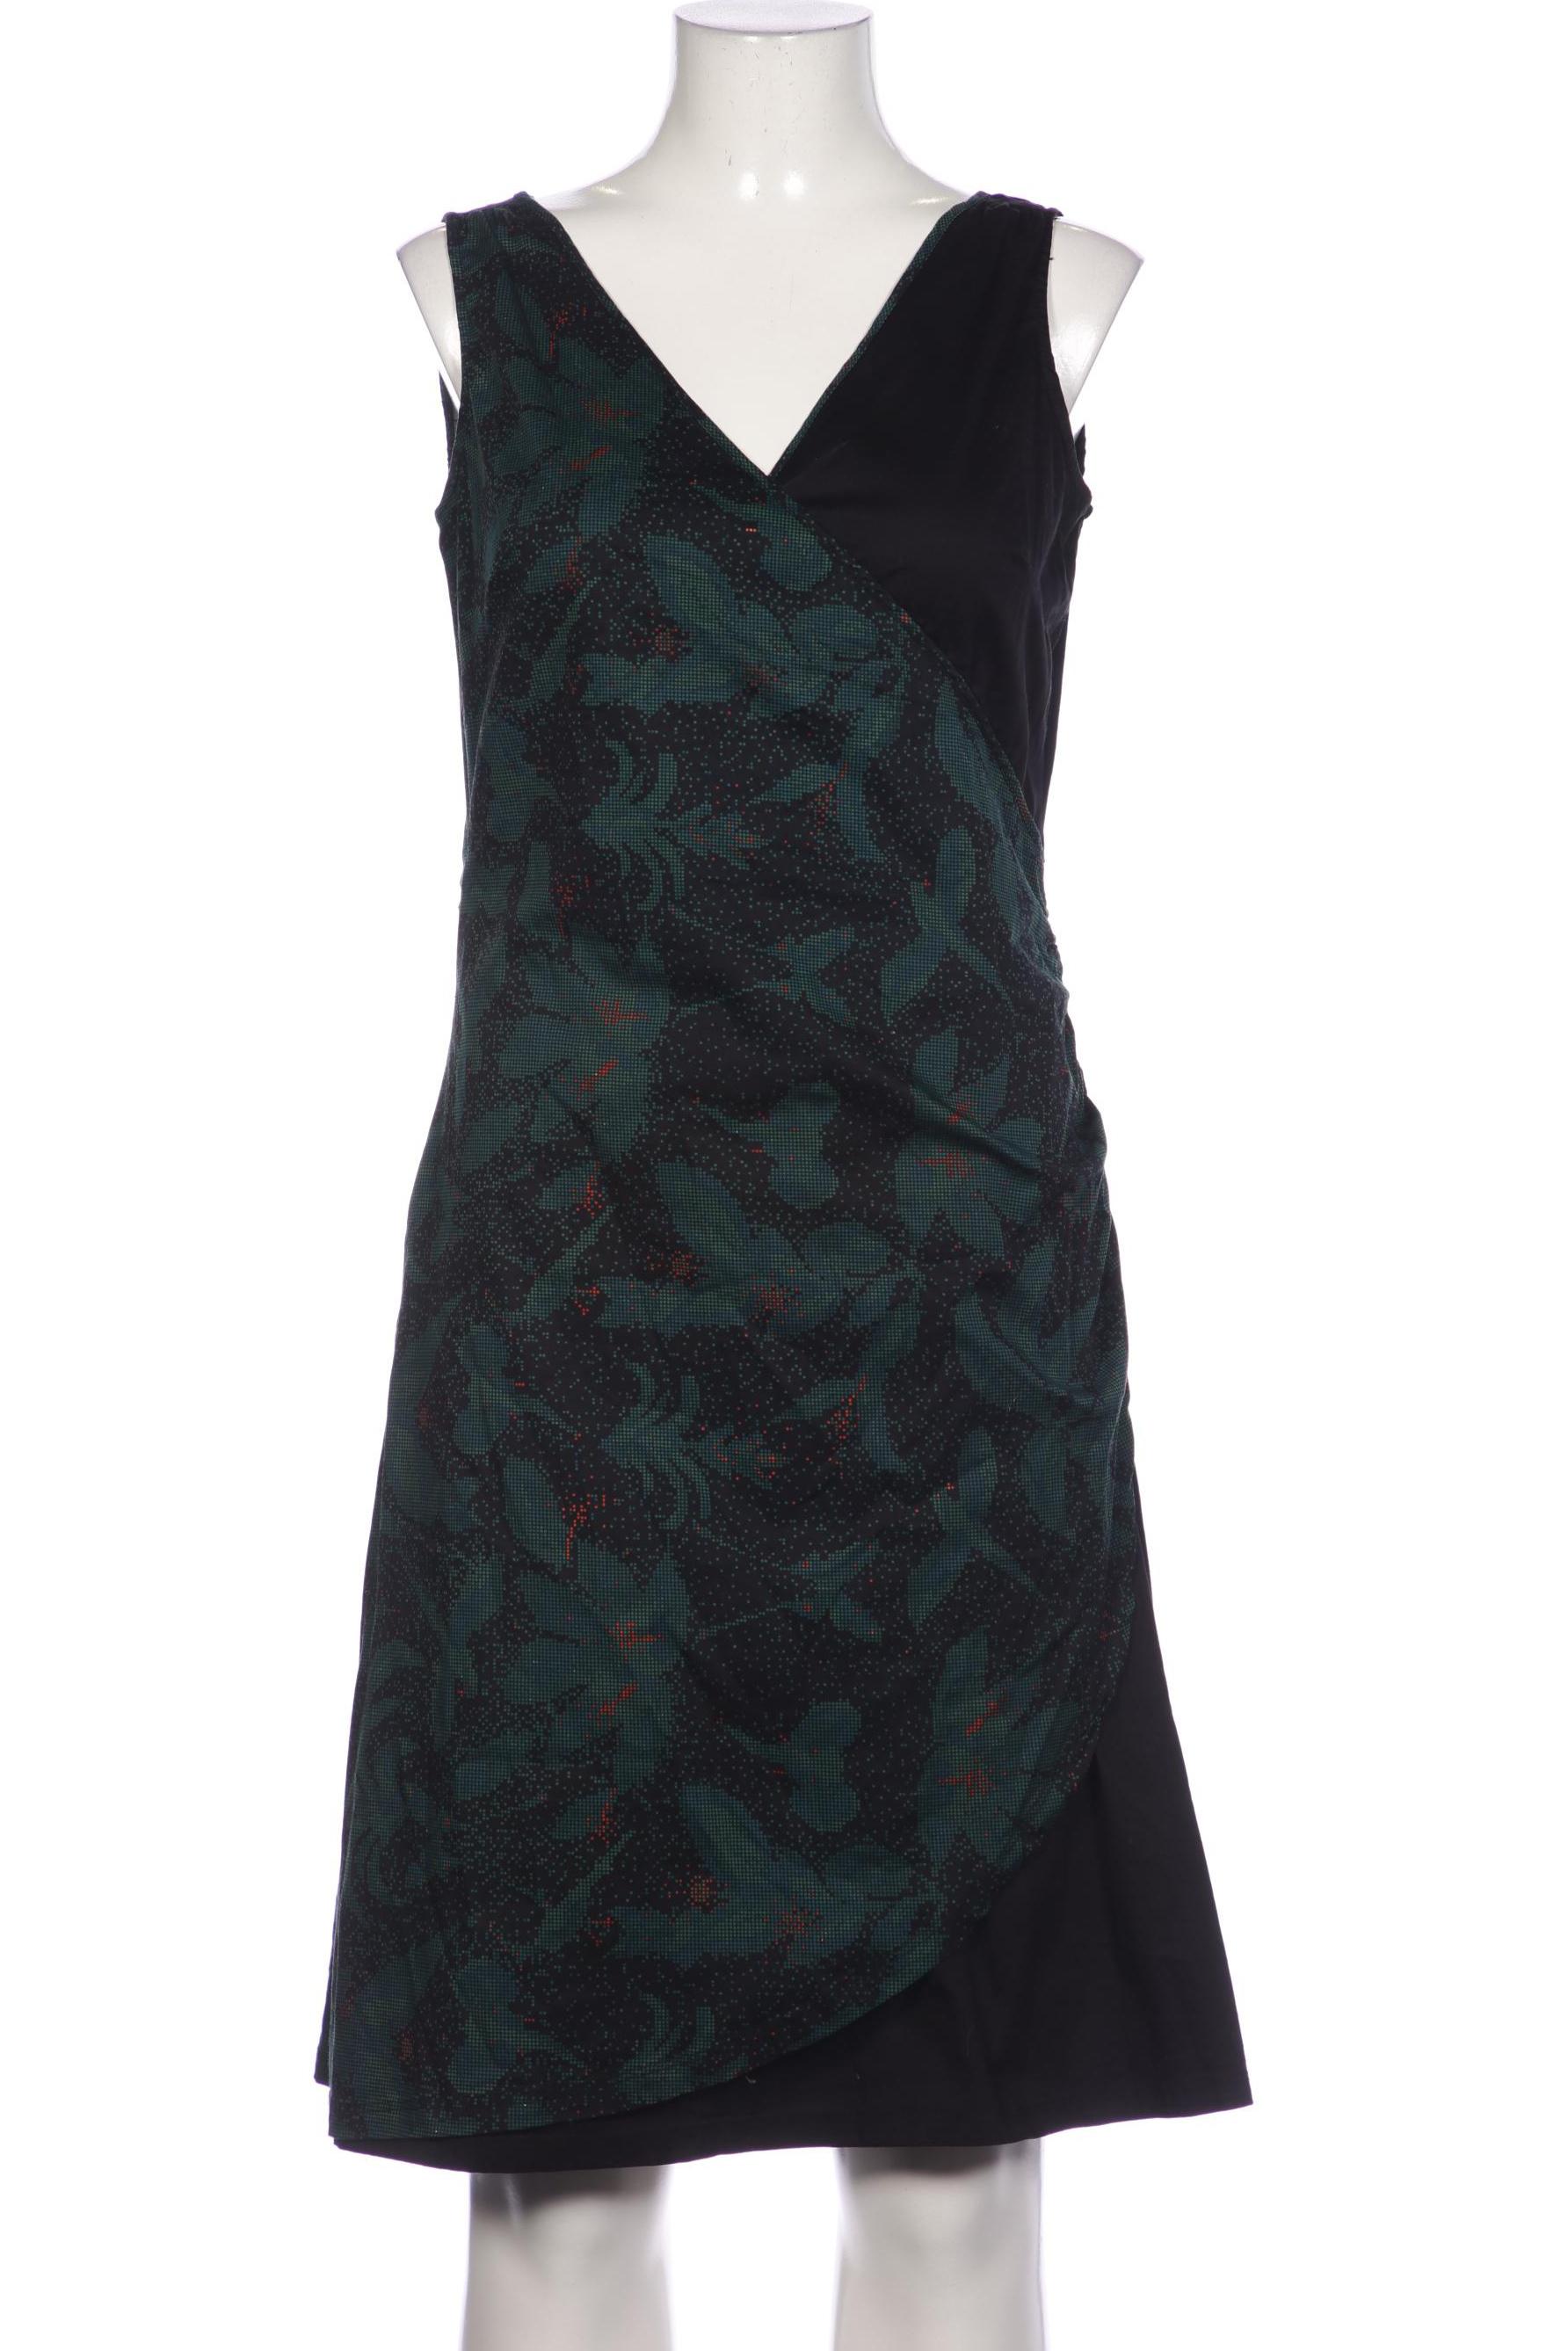 Skfk Damen Kleid, schwarz, Gr. 44 von SKFK